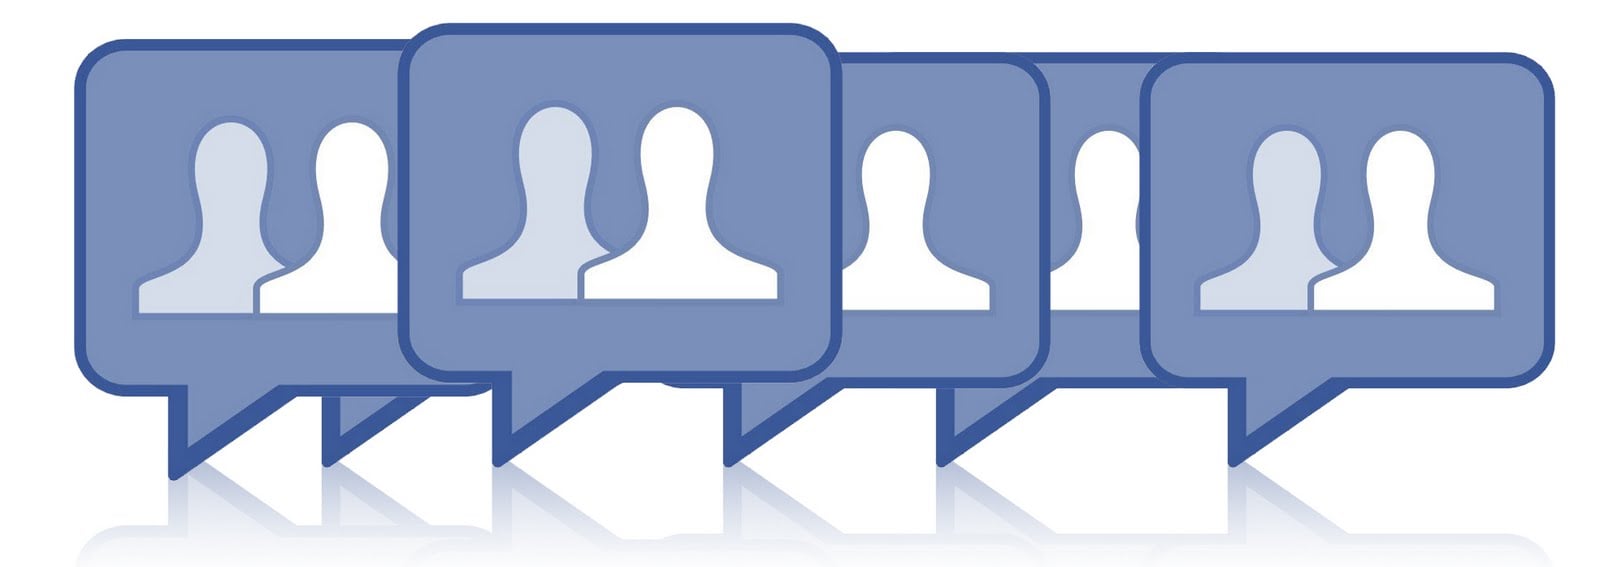 Comportamento: 10 grupos legais para entrar no Facebook